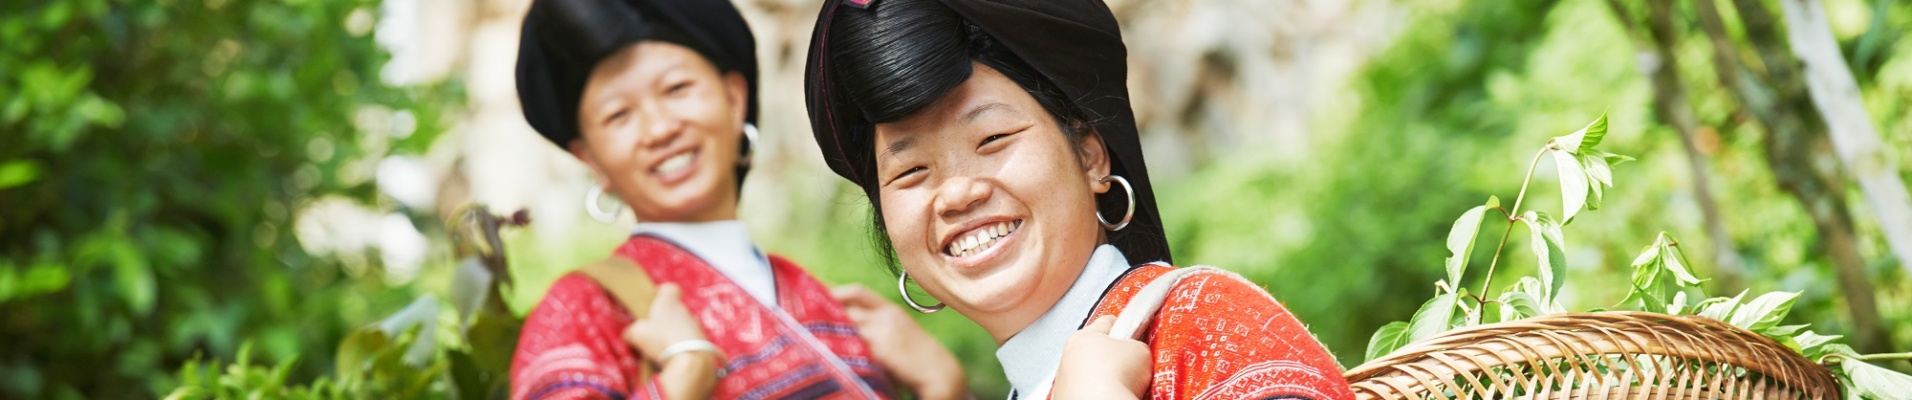 Femmes de la minorité Yao souriantes